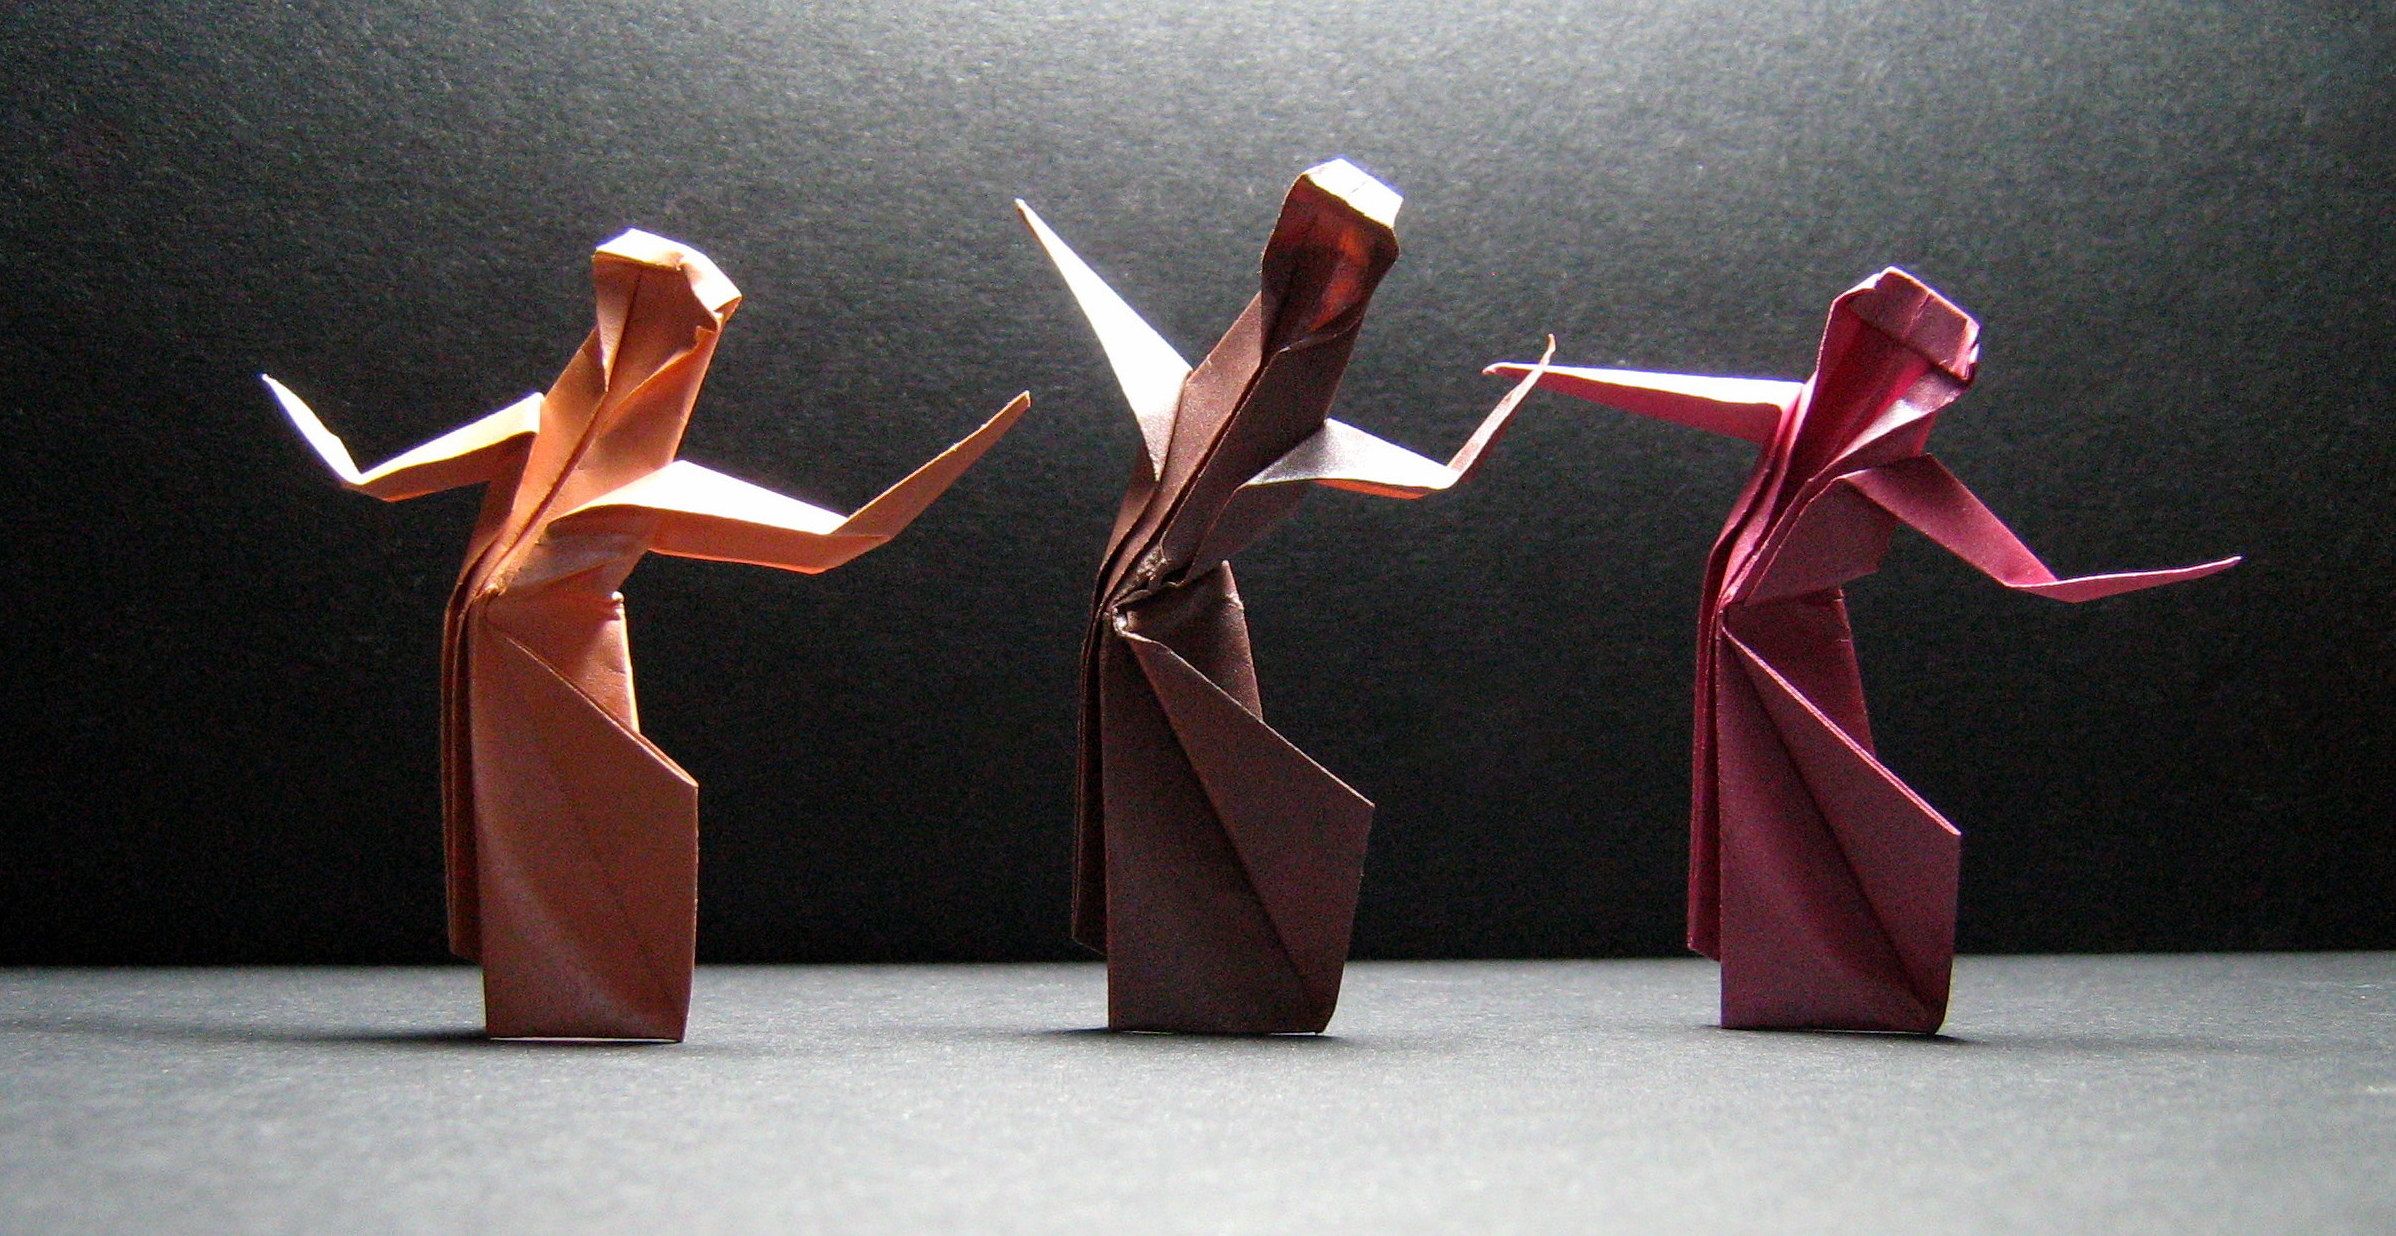 Японское оригами